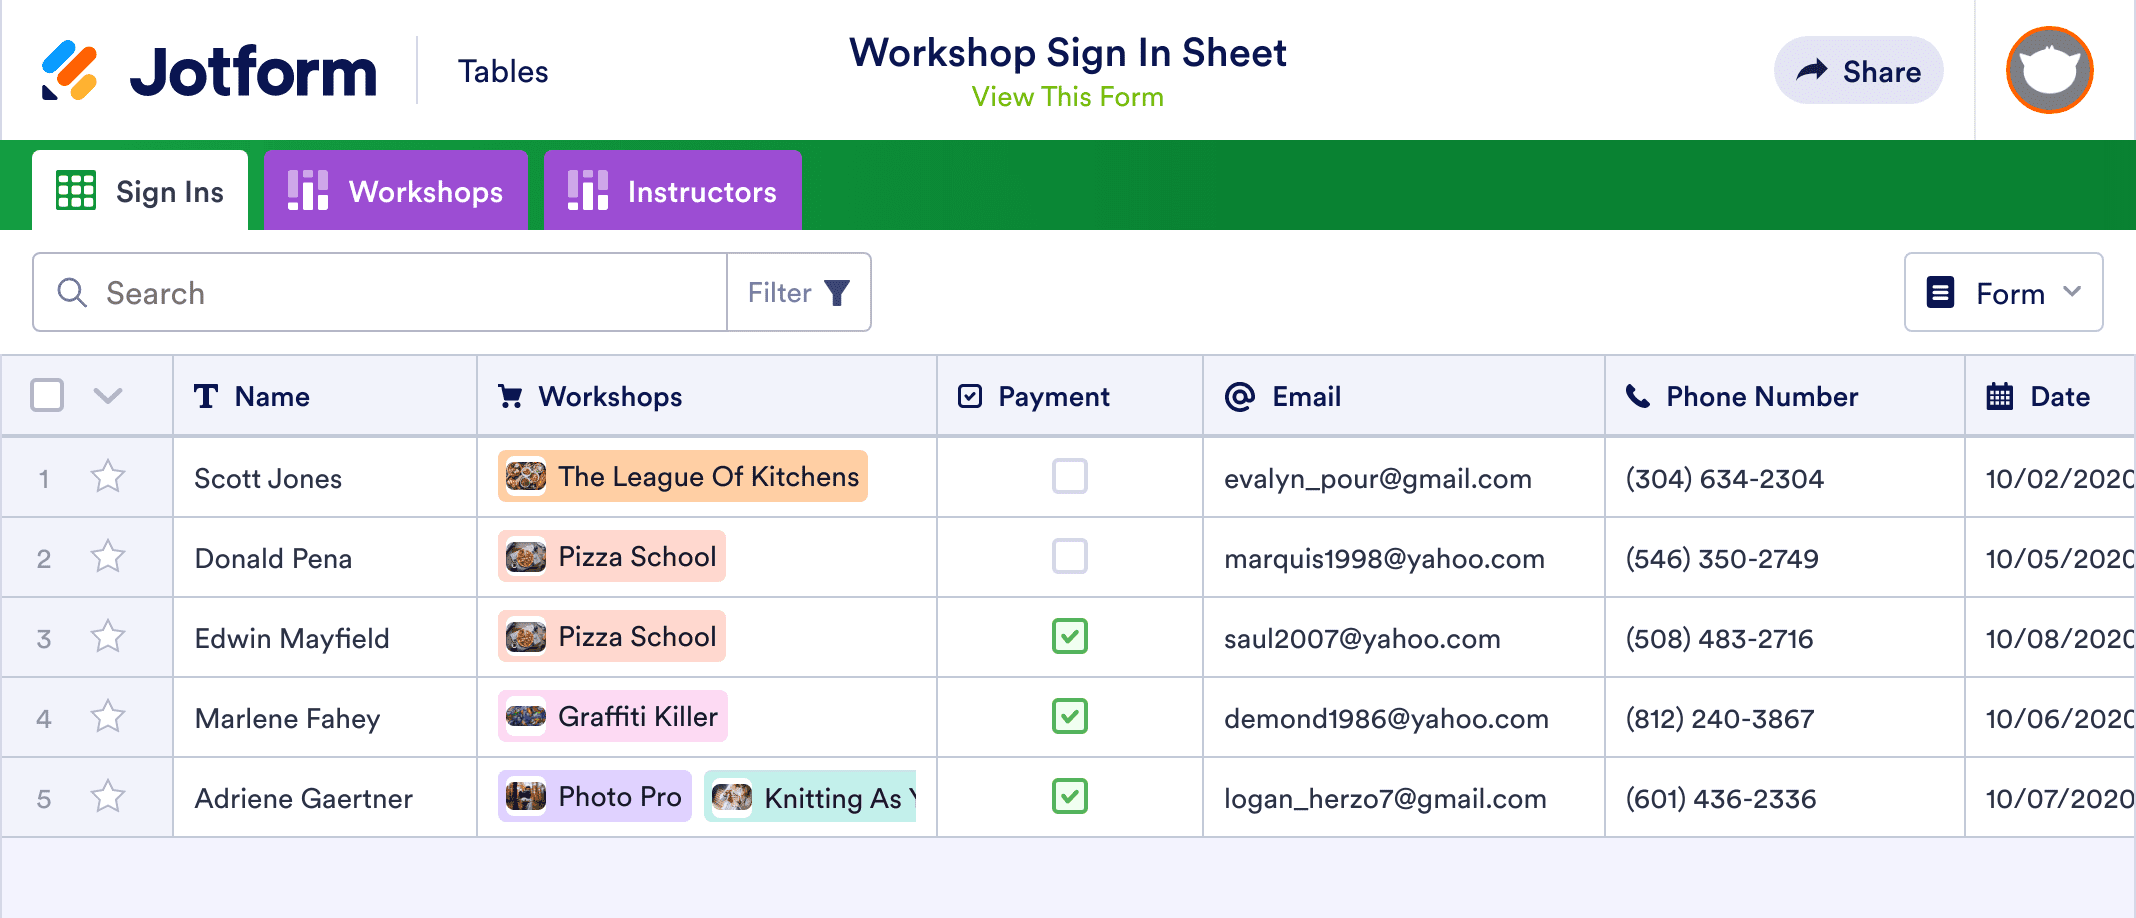 Workshop Sign In Sheet